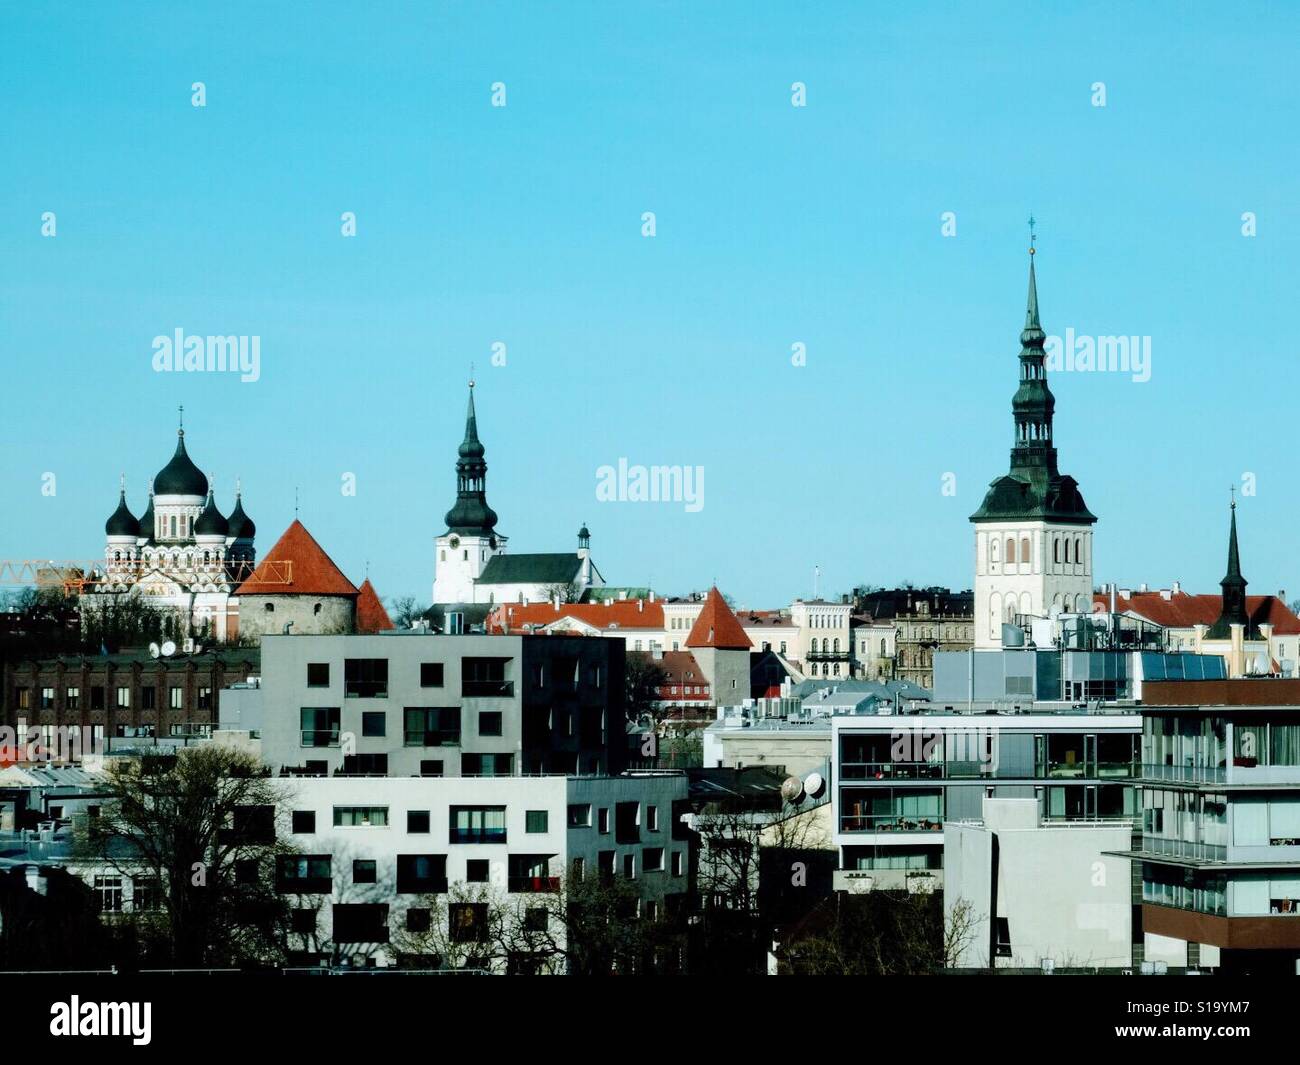 Estonia Tallinn old city Stock Photo